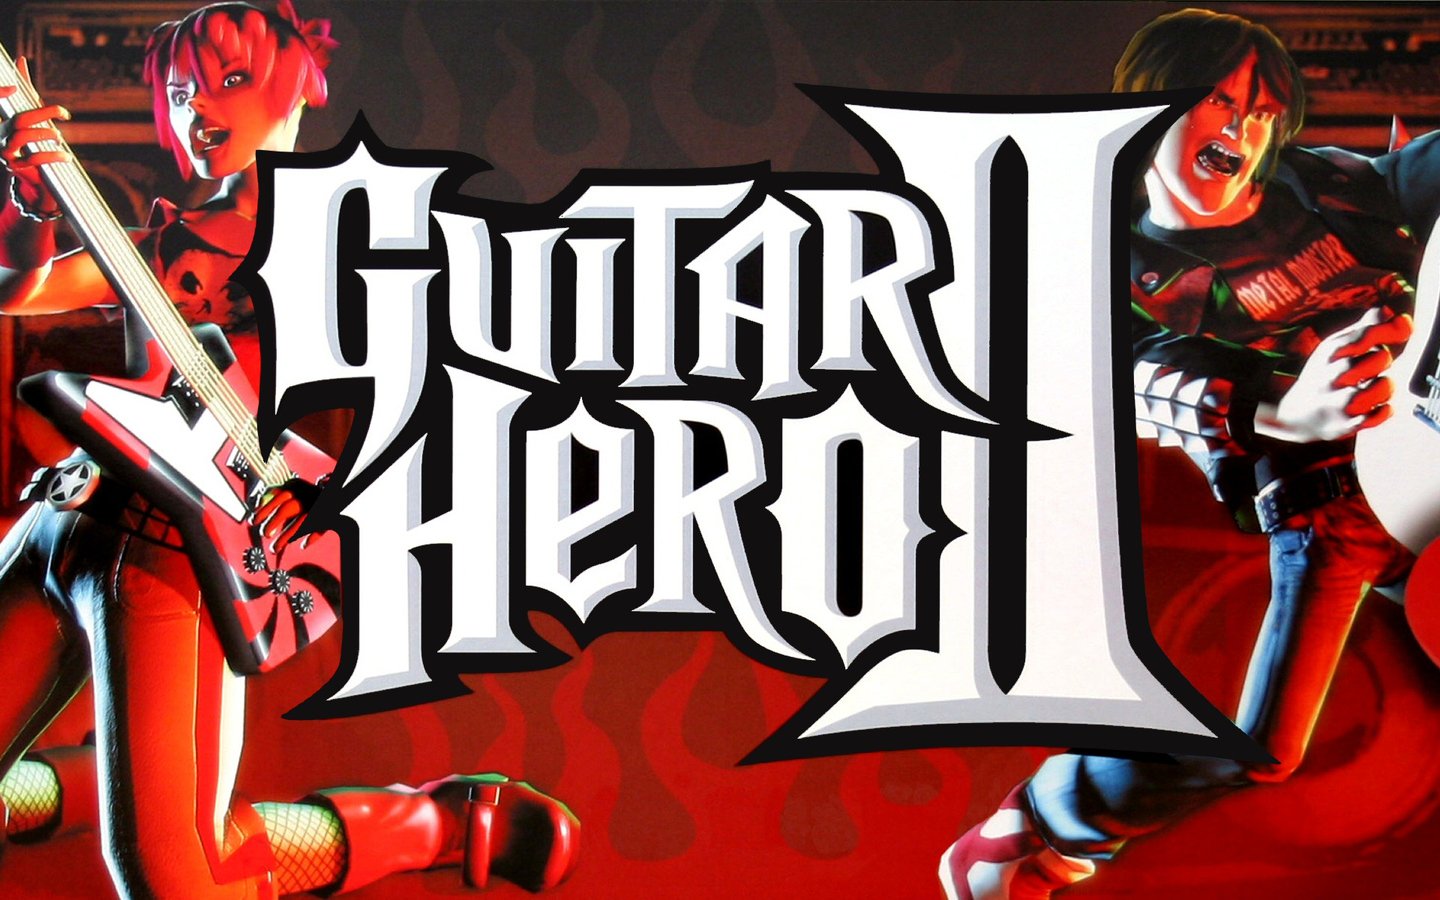 Wallpapers: Guitar Hero II merupakan salah satu dari kumpulan game ps2